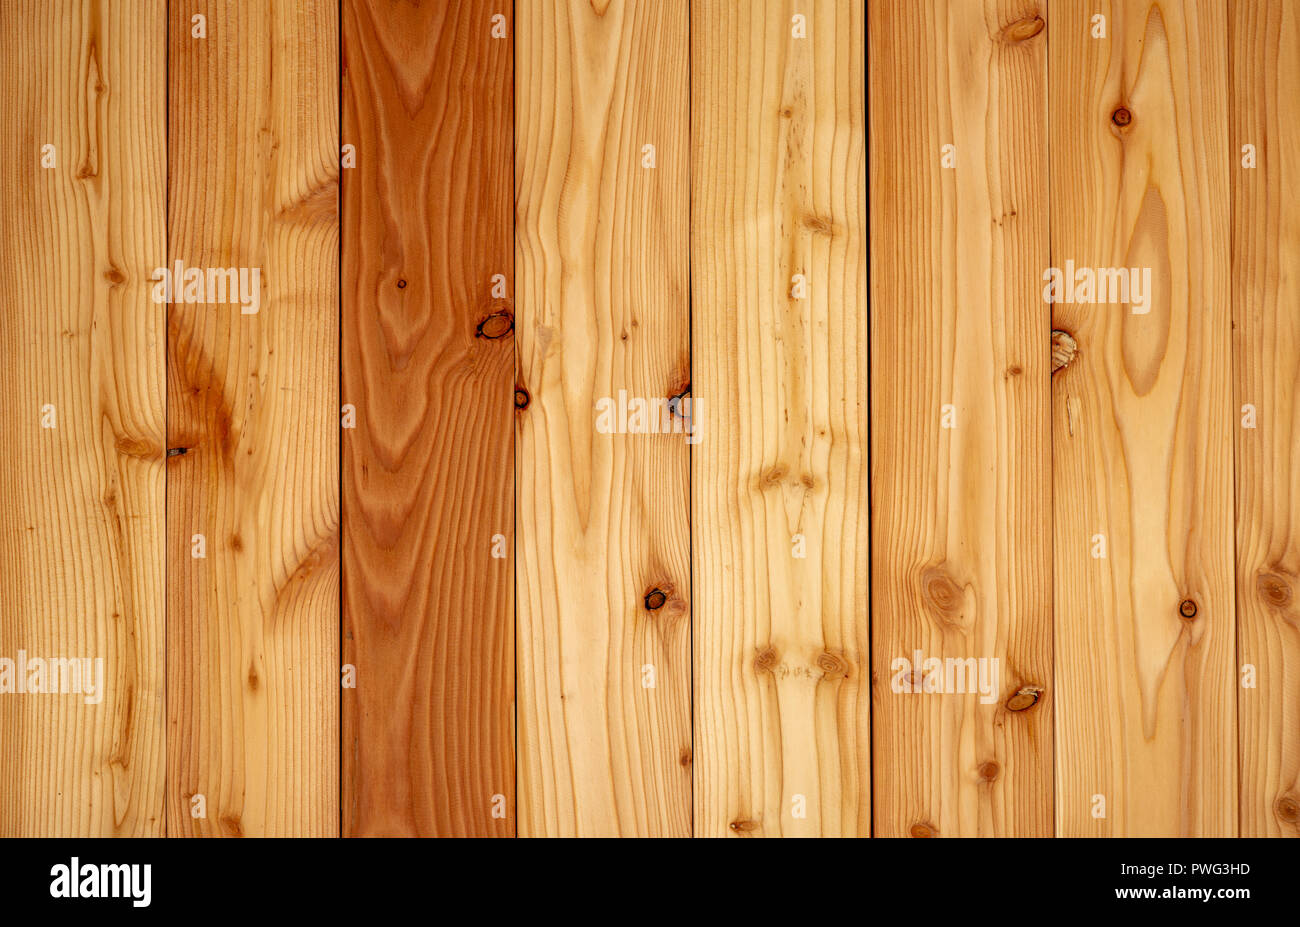 Nét vàng rực rỡ của texture gỗ vàng mang lại cảm giác ấm cúng và gần gũi. Chúng thường được sử dụng như vật liệu trang trí và lót sàn, giúp tăng tính thẩm mỹ và tạo điểm nhấn cho không gian. Hãy xem ảnh để cảm nhận sự gần gũi và quen thuộc của texture gỗ vàng.